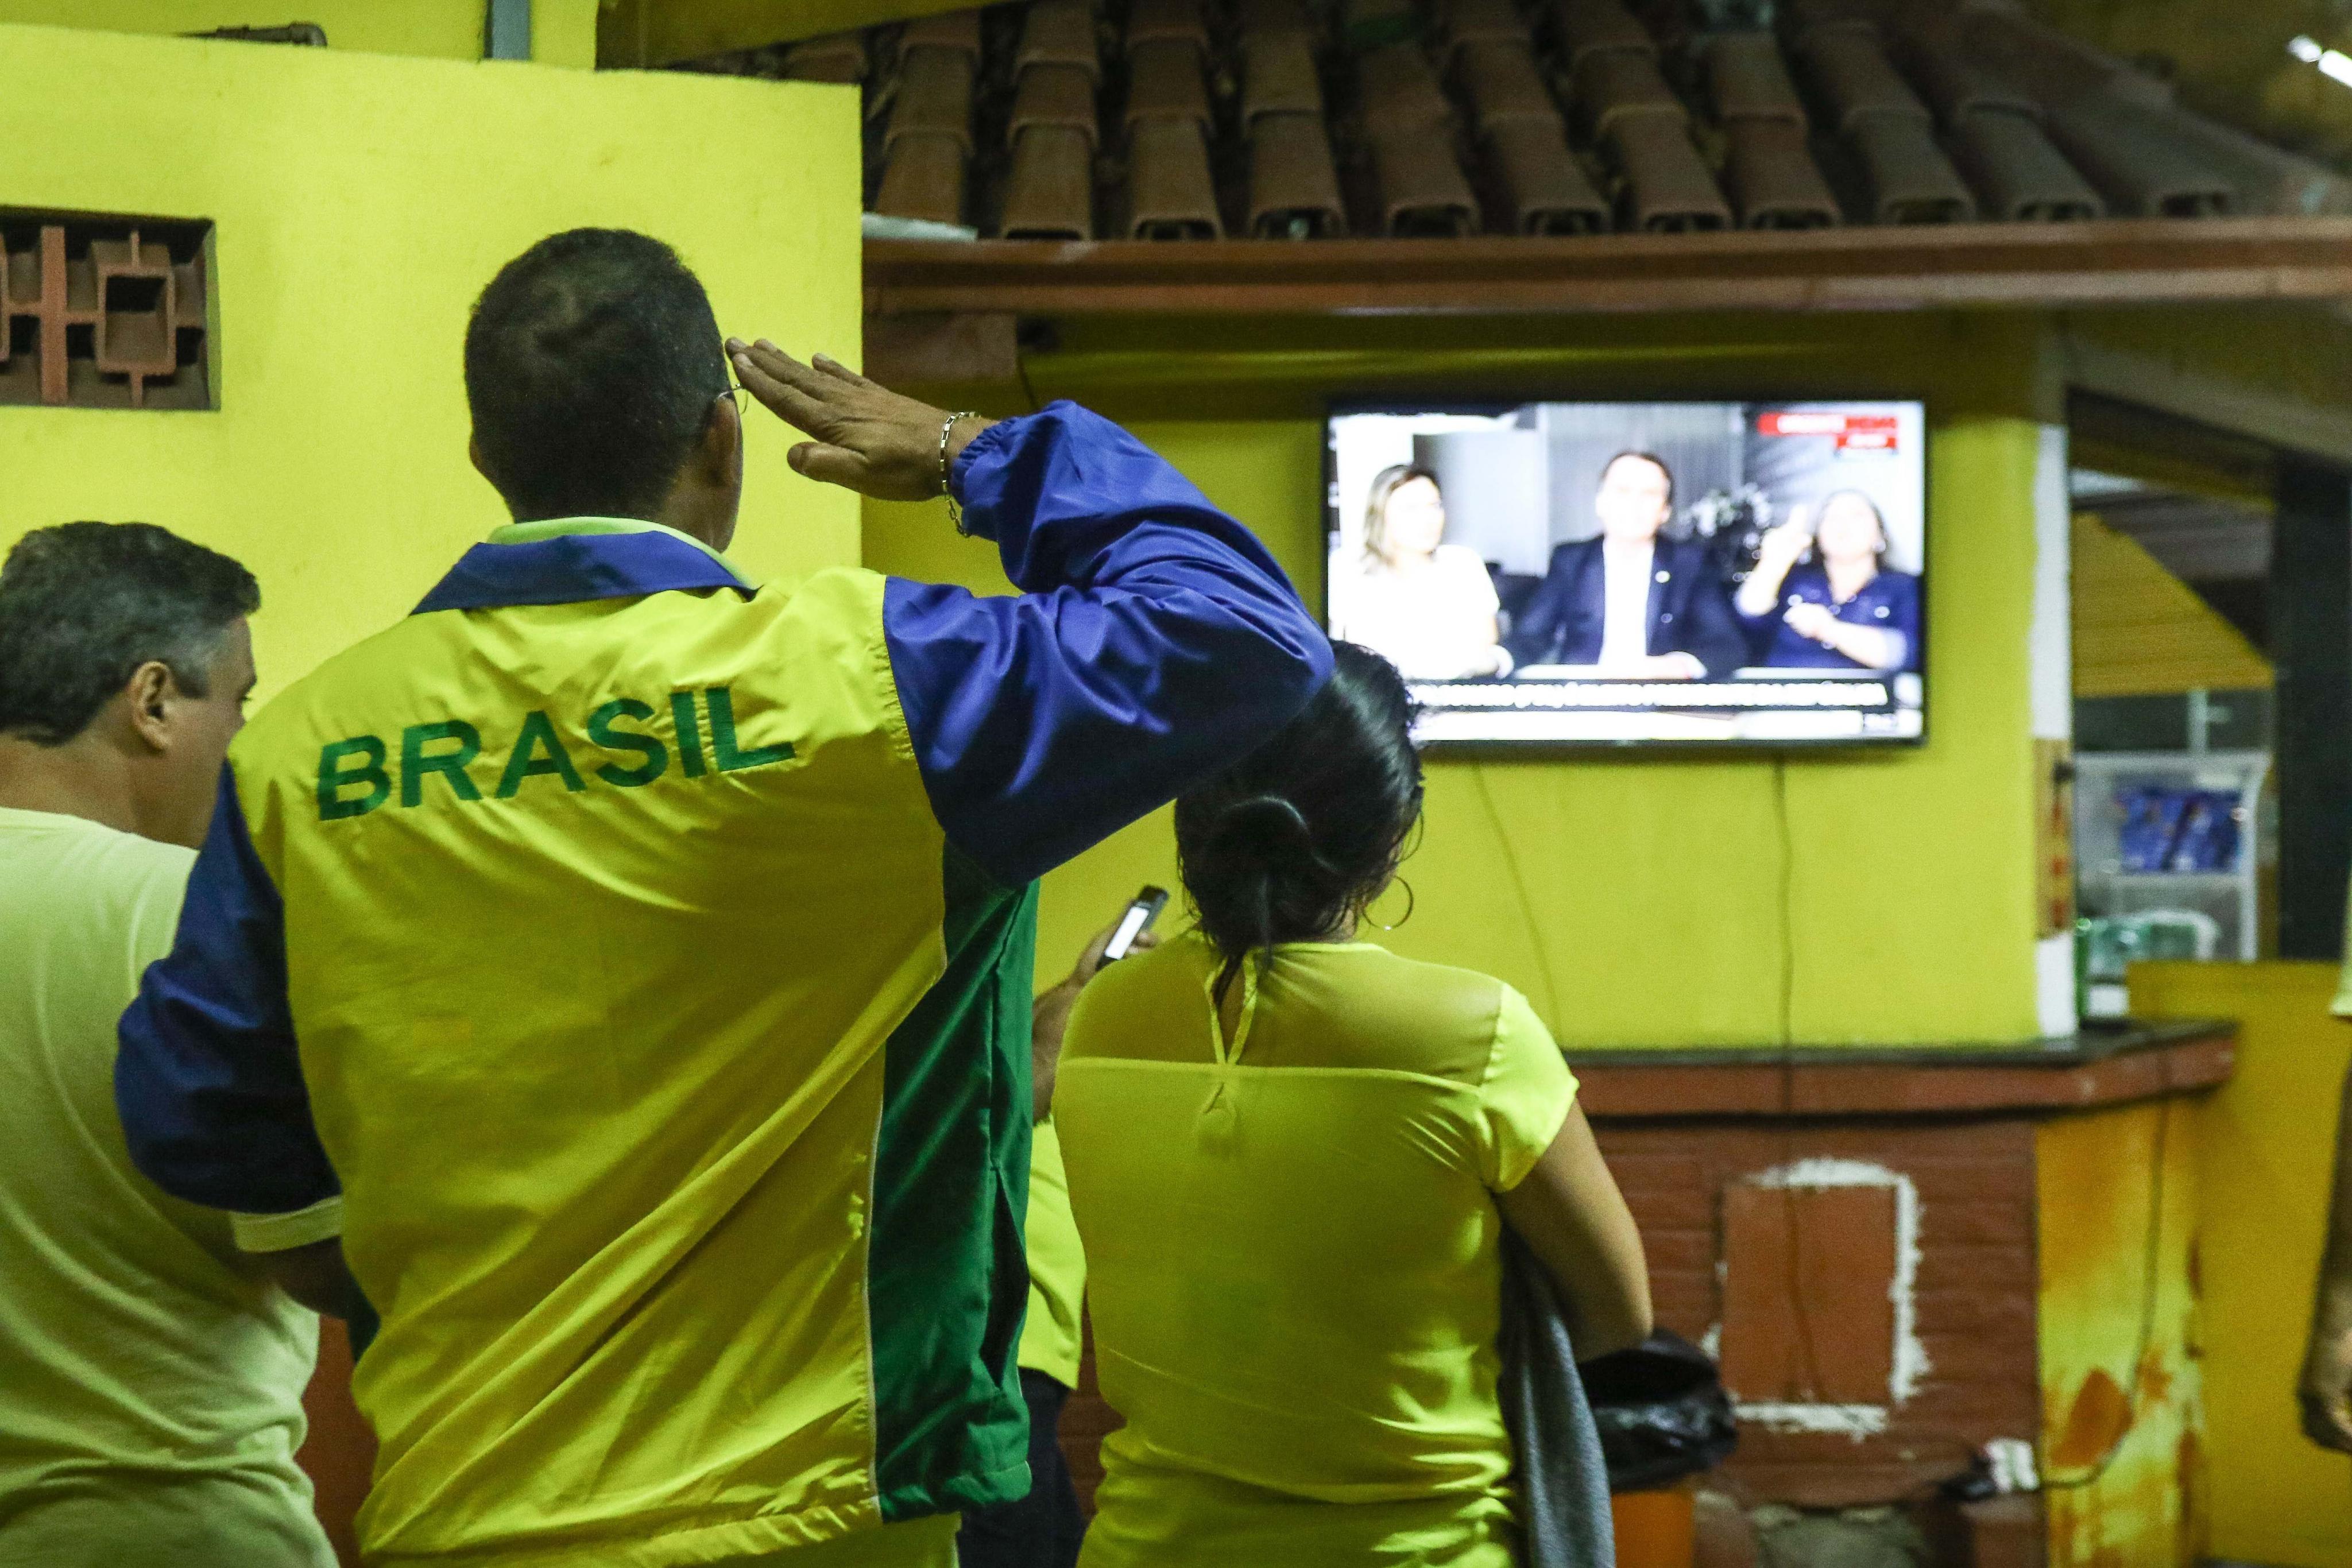 Demokratie scheint vielen Anhängern von Brasiliens Präsident Jair Bolsonaro nicht wichtig.